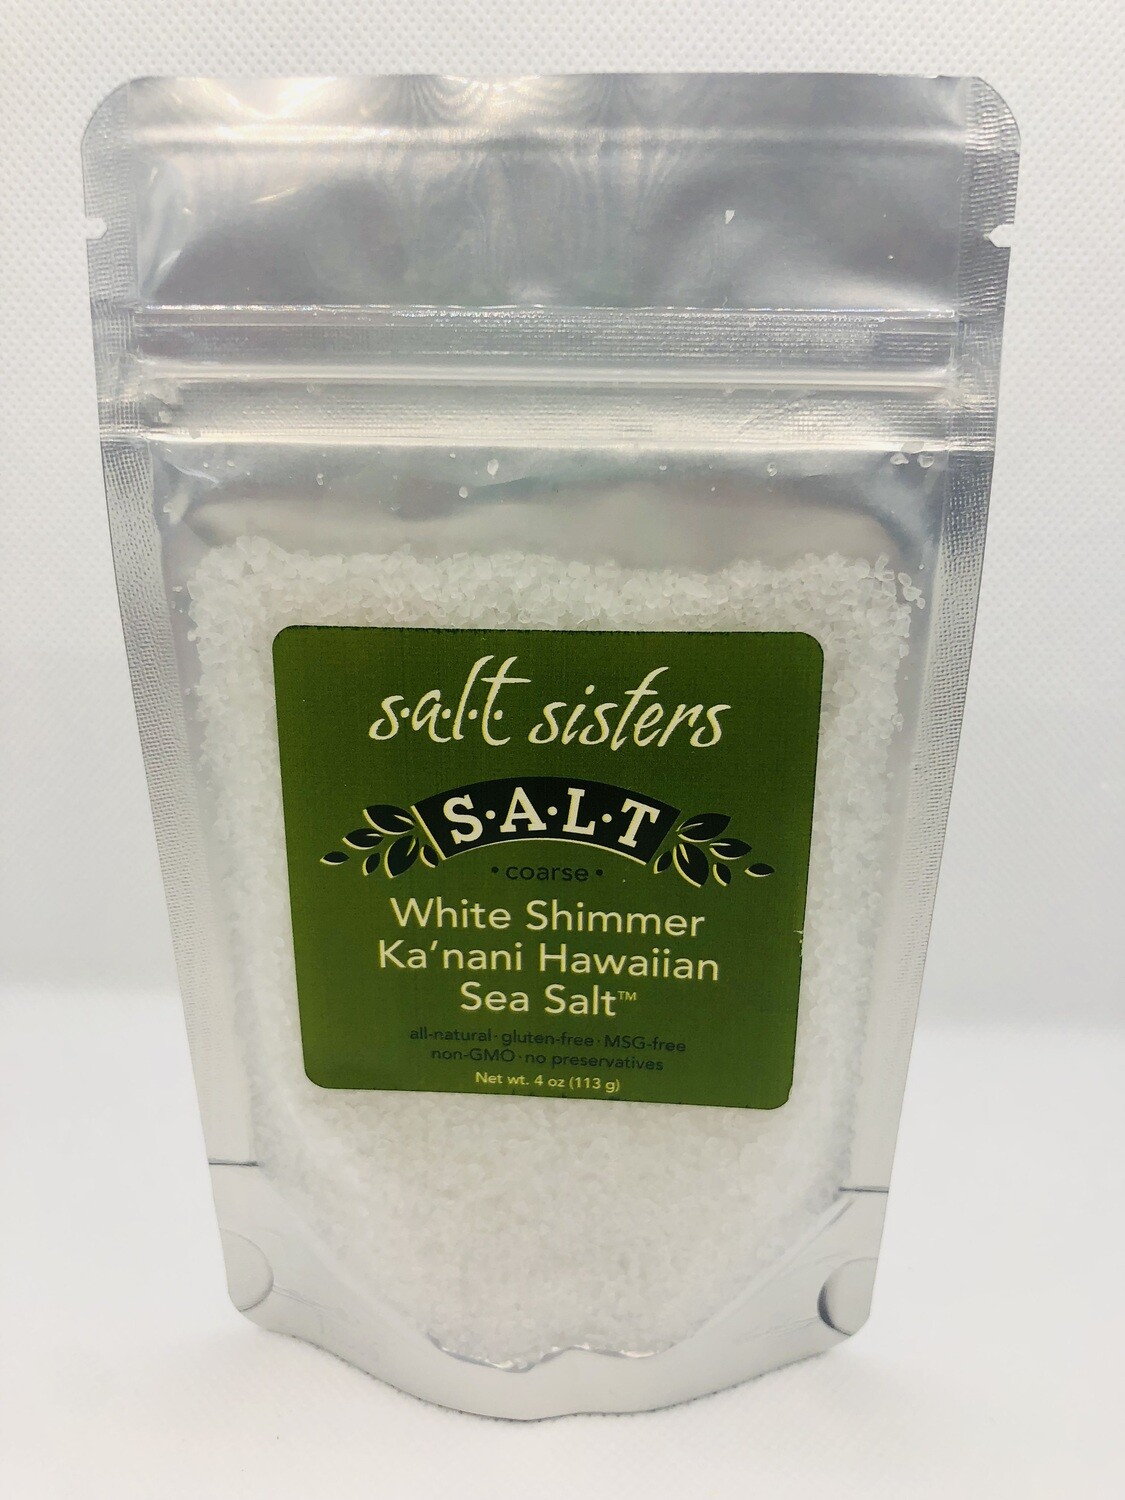 White Shimmer KA’NANI Hawaiian Sea Salt, coarse